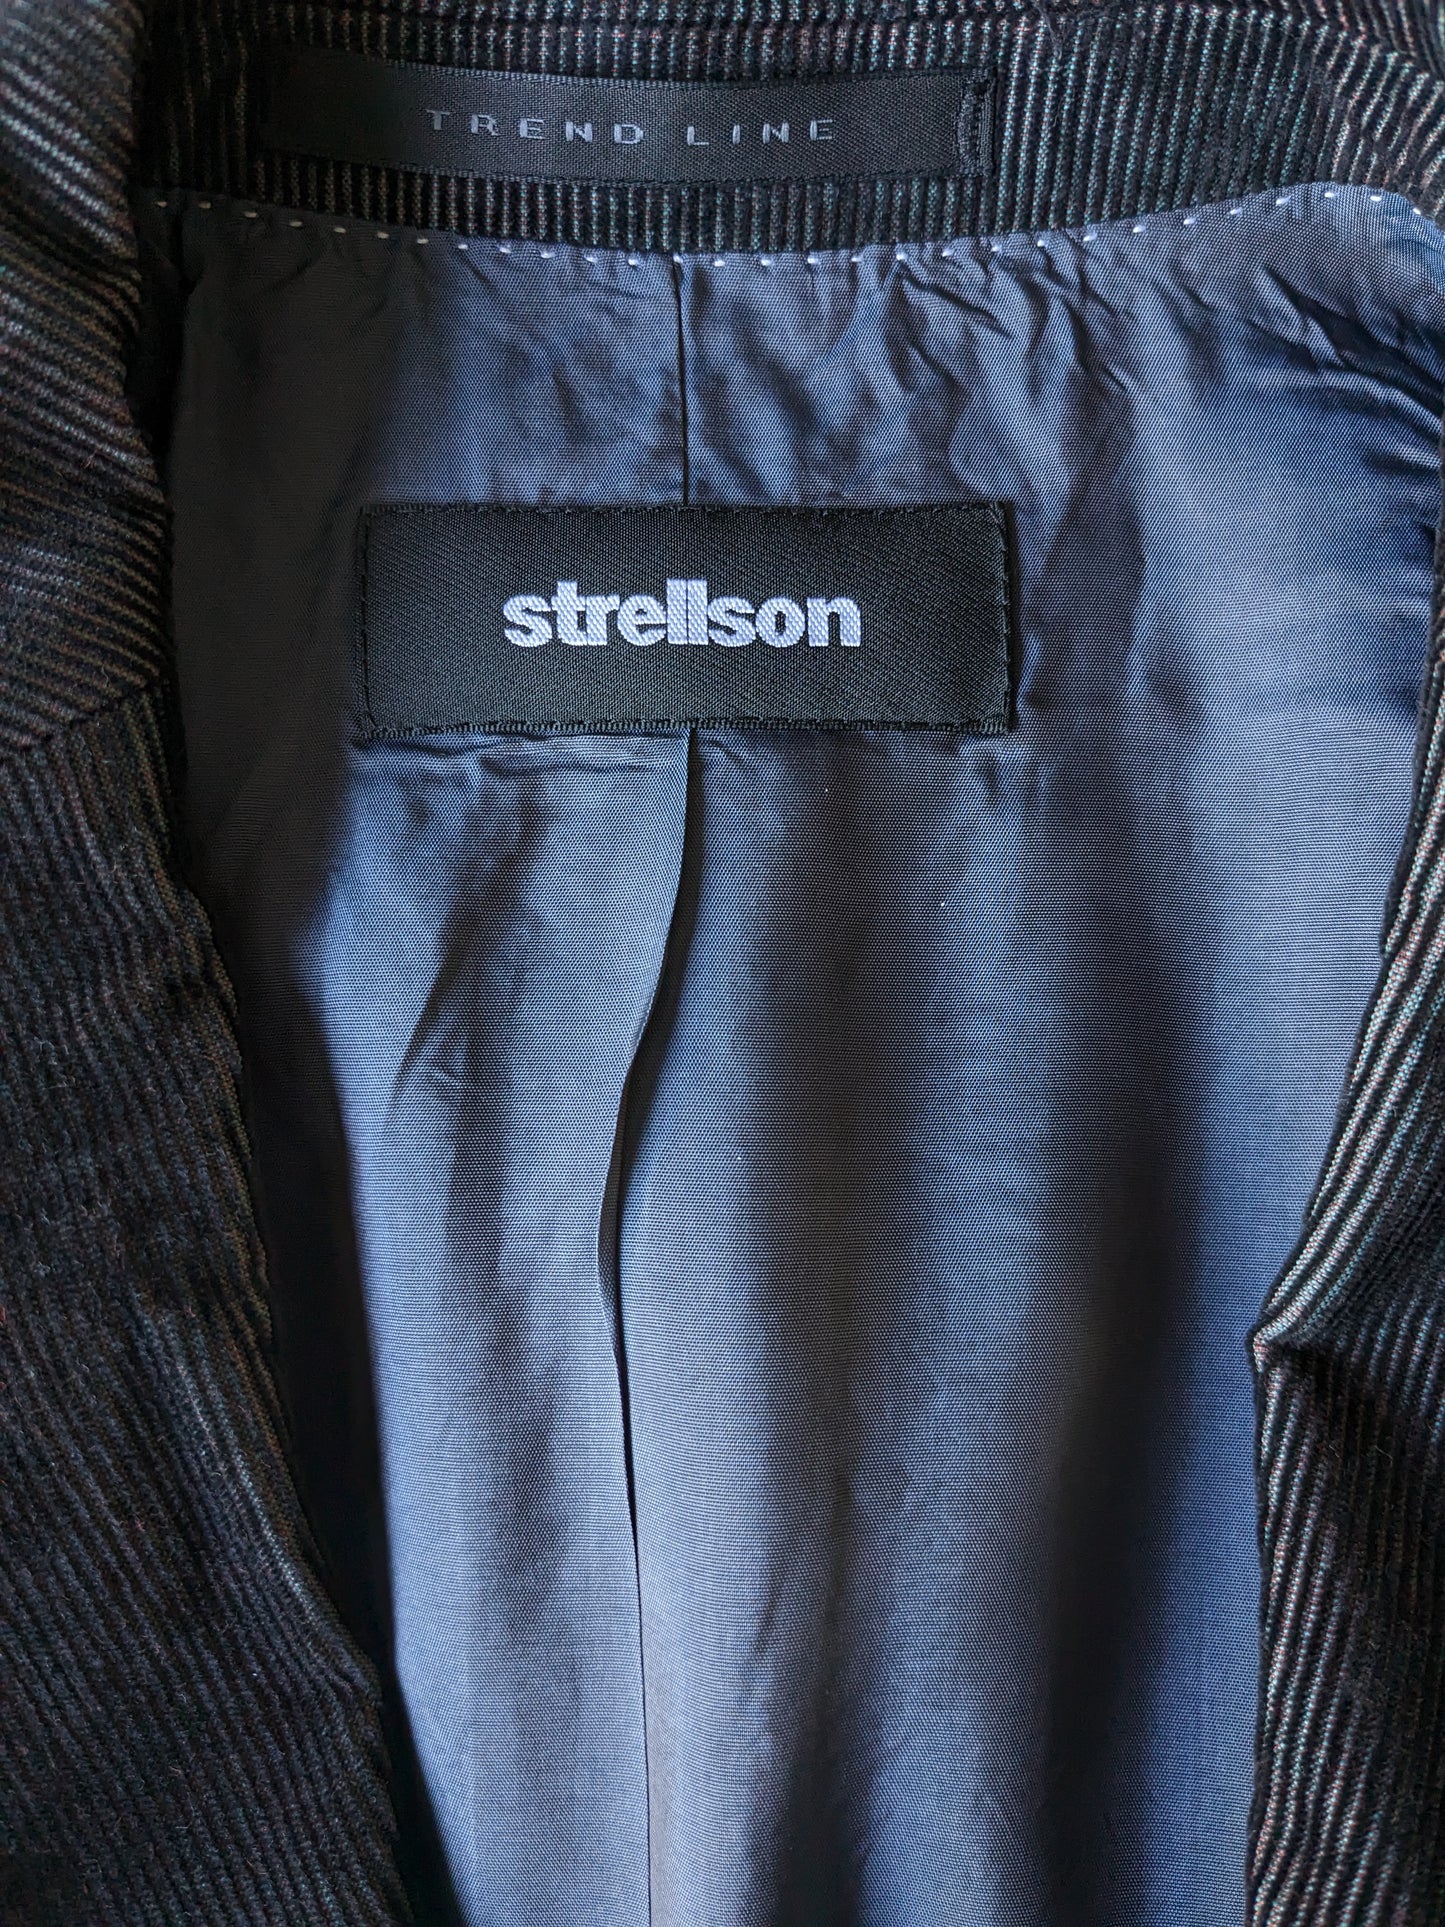 Strellson Trend line Rib Kostuum. Zwart met groen/paarse metallic glans. Maat 46 / S